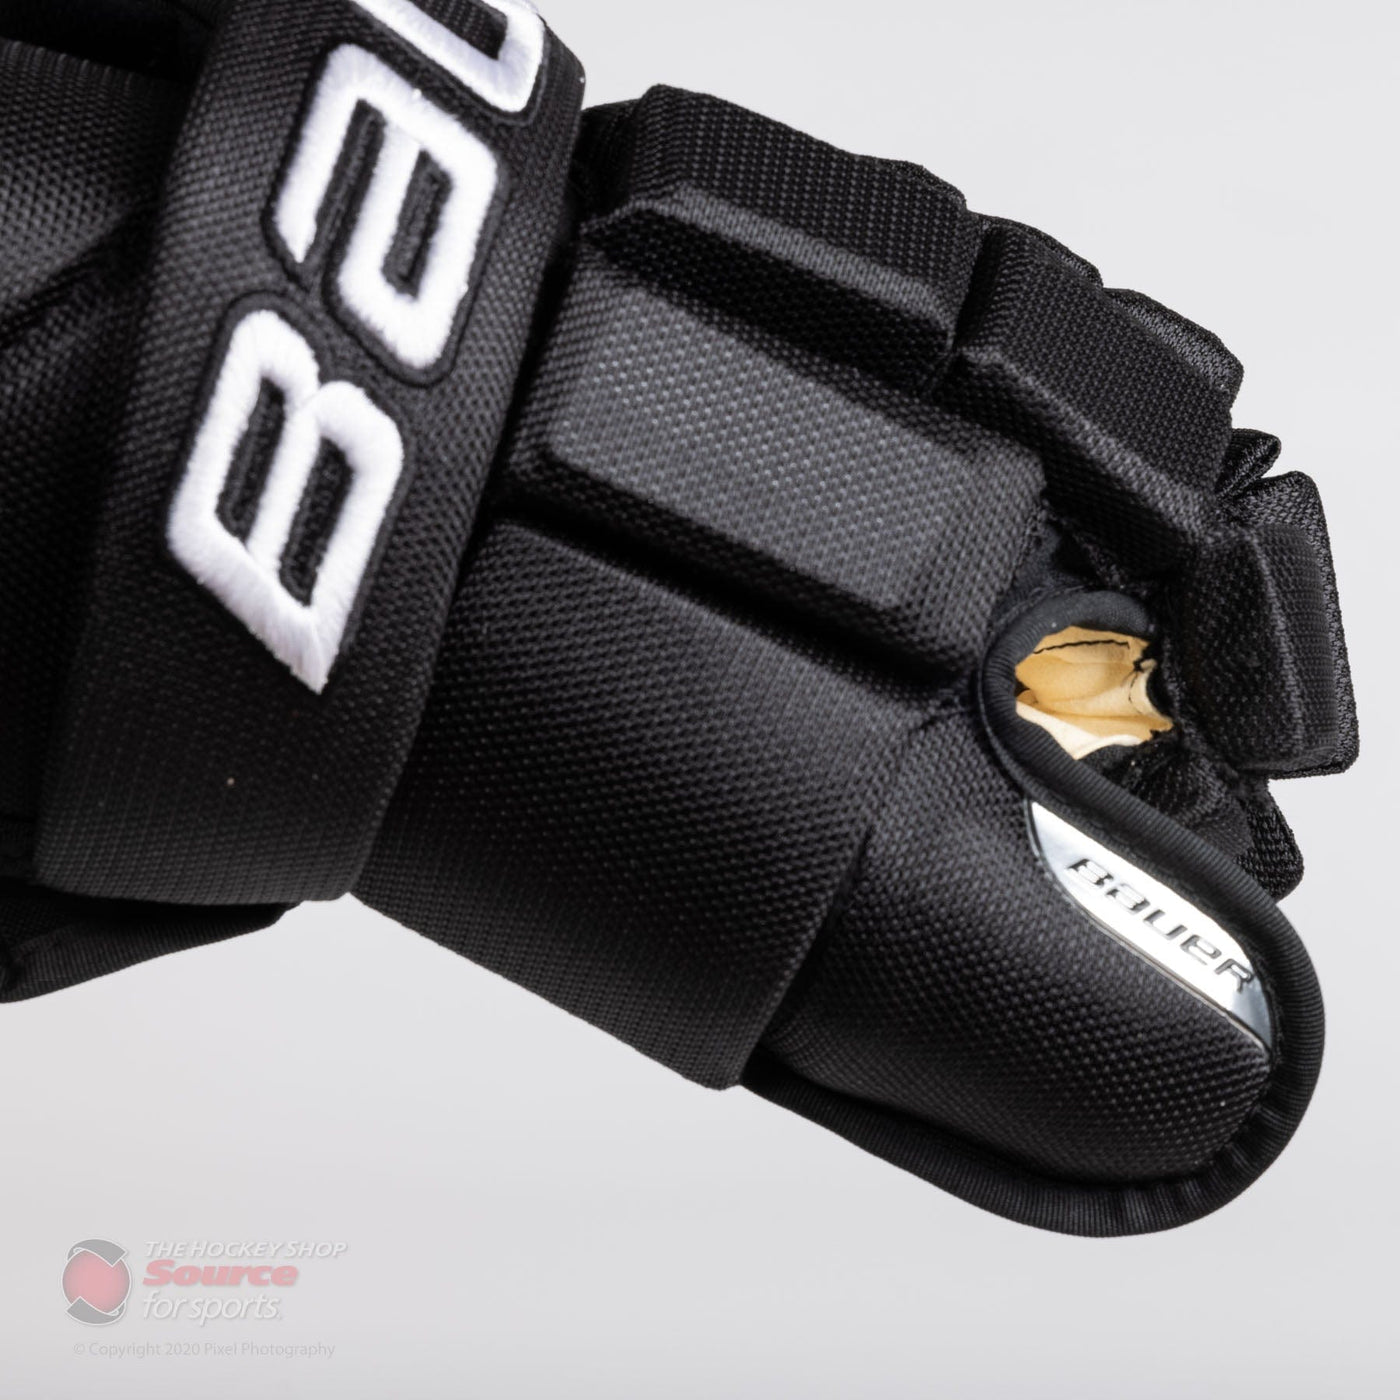 Bauer Nexus Team Pro Senior Hockey Gloves